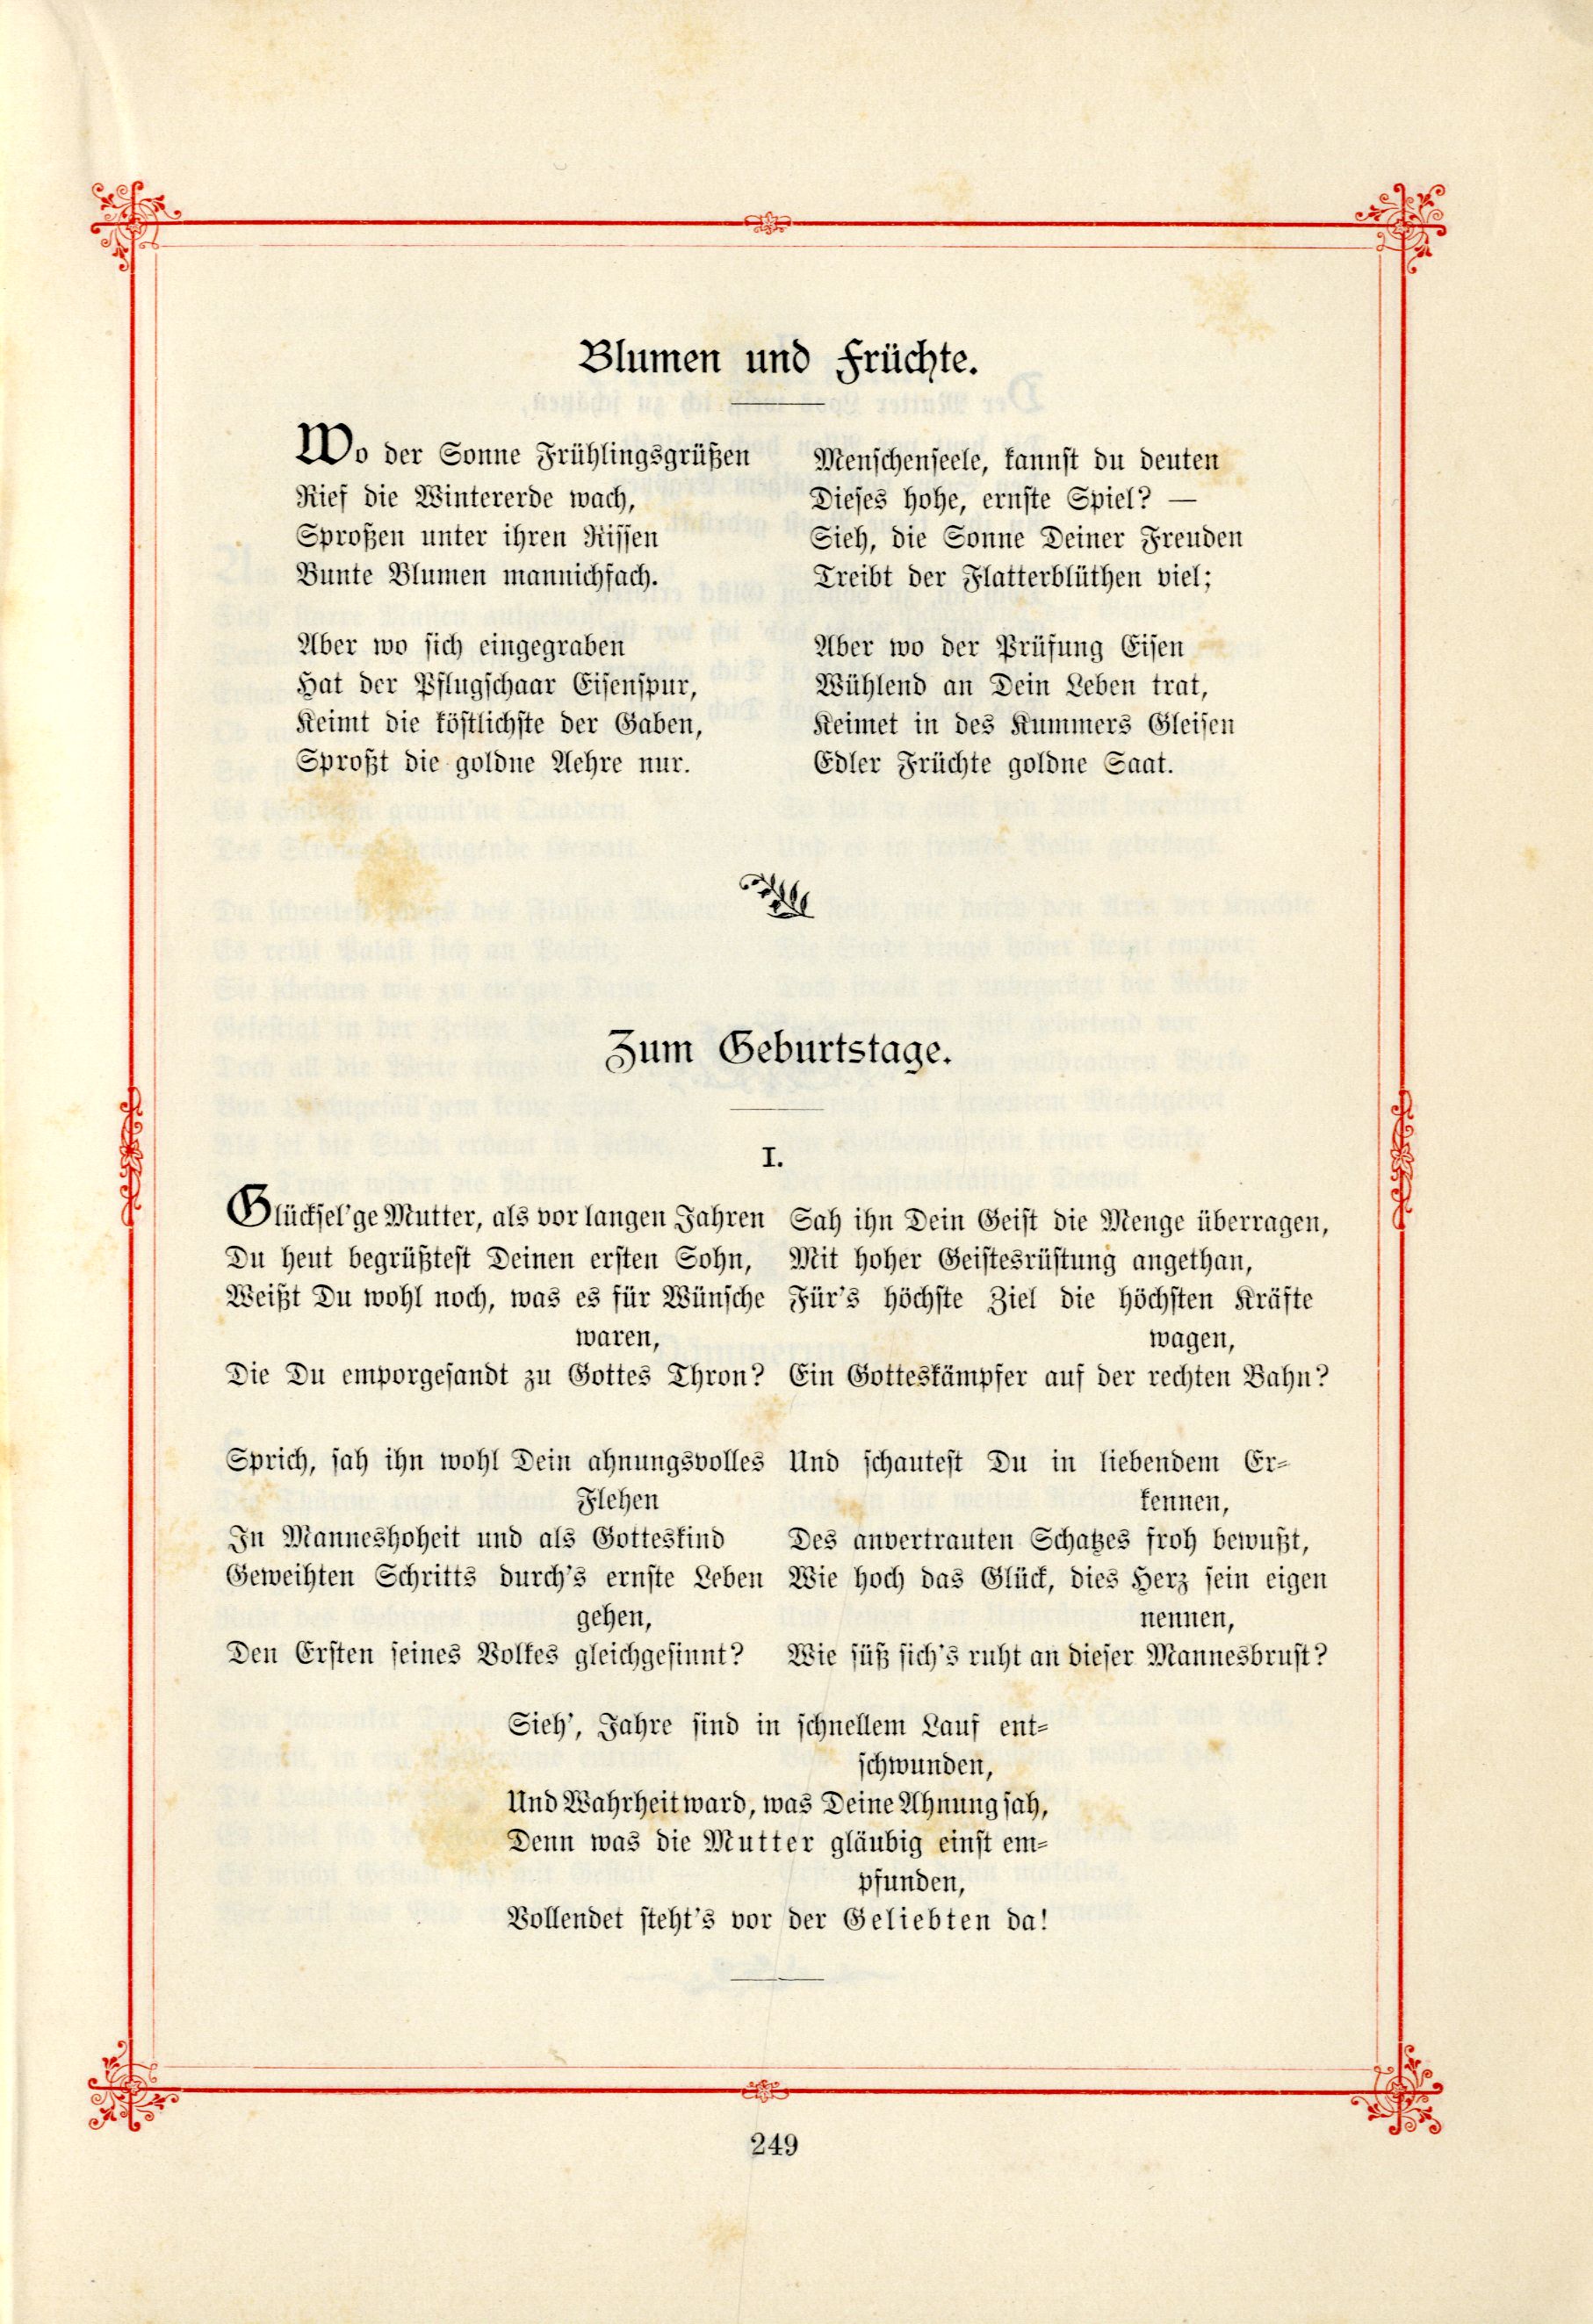 Das Baltische Dichterbuch (1895) | 295. (249) Main body of text